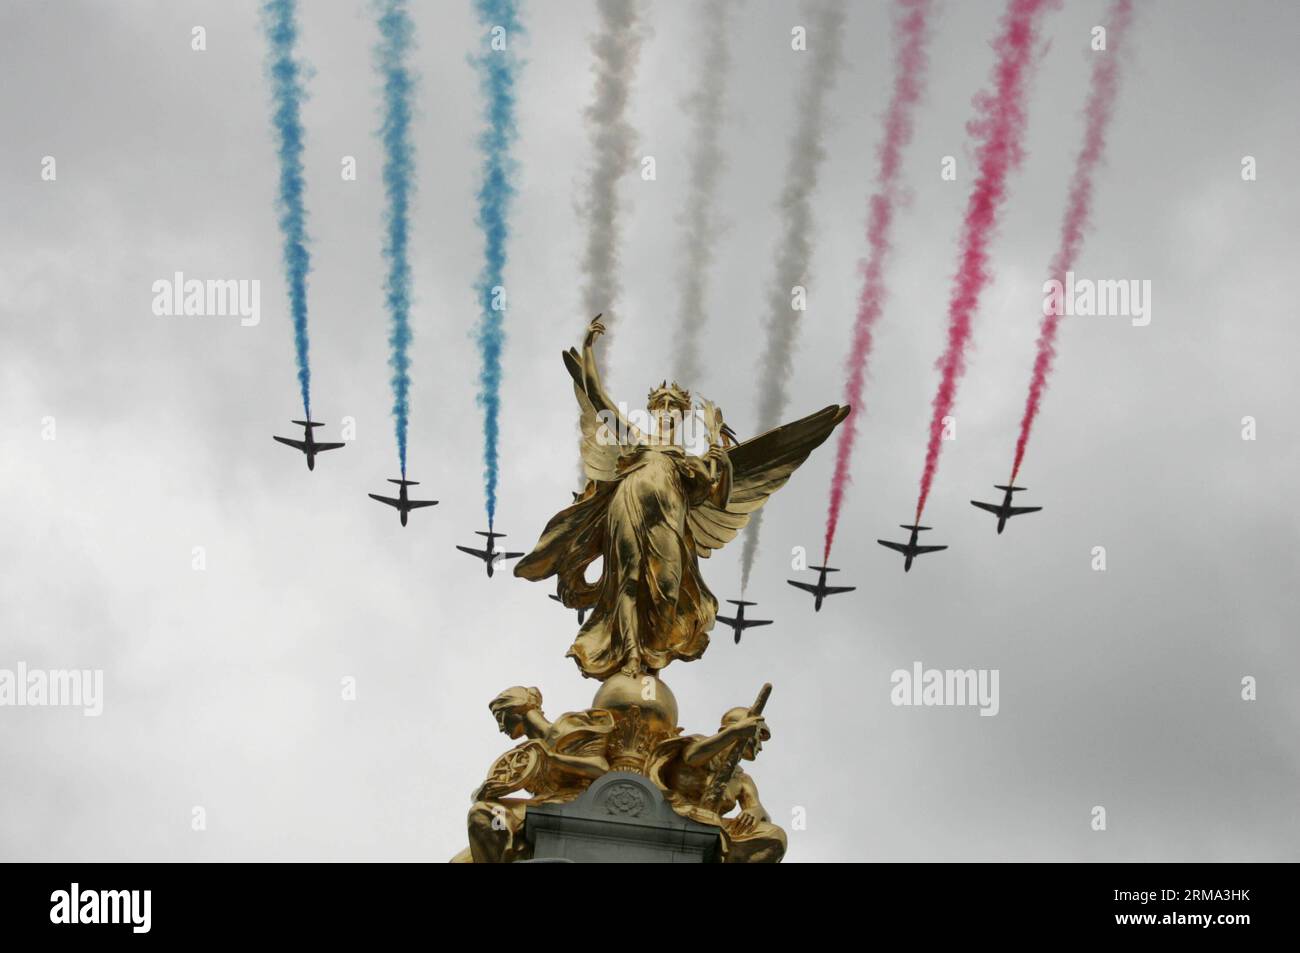 (140615) -- LONDRA, 15 giugno 2014 (Xinhua) -- la Royal Air Force vola sopra Buckingham Palace durante il Trooping the Colour a Londra il 14 giugno 2014. La cerimonia di Trooping the Colour è per celebrare il compleanno ufficiale del sovrano. (Xinhua/Bimal Gautam) BRITAIN-ROYALS-TROOPING THE COLOR PUBLICATIONxNOTxINxCHN Londra 15 giugno 2014 XINHUA Royal Air Force VOLA su Buckingham Palace durante Trooping the Colour a Londra IL 14 giugno 2014 la cerimonia di Trooping the Colour È per celebrare il compleanno ufficiale del sovrano XINHUA Bimal Gautam Britain Royals Trooping the Colour PUBLICATION Foto Stock